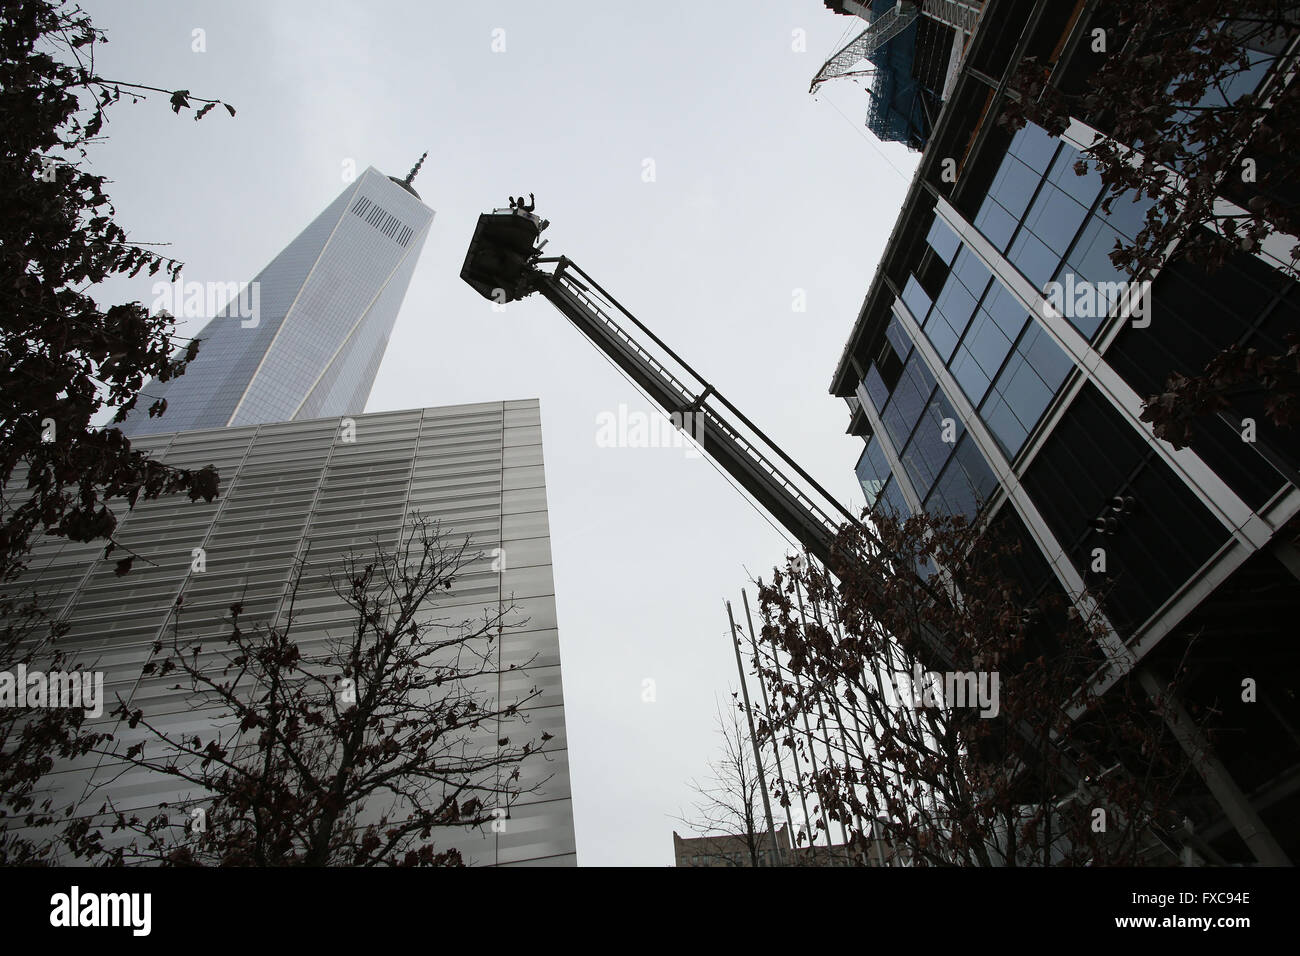 New York, NY, USA. Mar 13, 2016. De bain un rayon descend un photographe qui capturé 343 pompiers volontaires avant la montée des escaliers Pompier NEW YORK au mémorial du 11 septembre à New York. L'événement, qui se tient chaque année à 4 World Trade Center, honore les 343 FDNY les pompiers qui sont morts le 11 septembre ainsi que la mémoire du passé les premiers intervenants et le personnel militaire dans le monde entier.Dans le cadre de l'ascension, les pompiers des 29 membres et quatre pays se sont rendues 72 étages au sommet de l'immeuble près de Ground Zero tandis que vêtus de leur complète. © Krista chenil/ZUMA/Alamy Fil Live News Banque D'Images